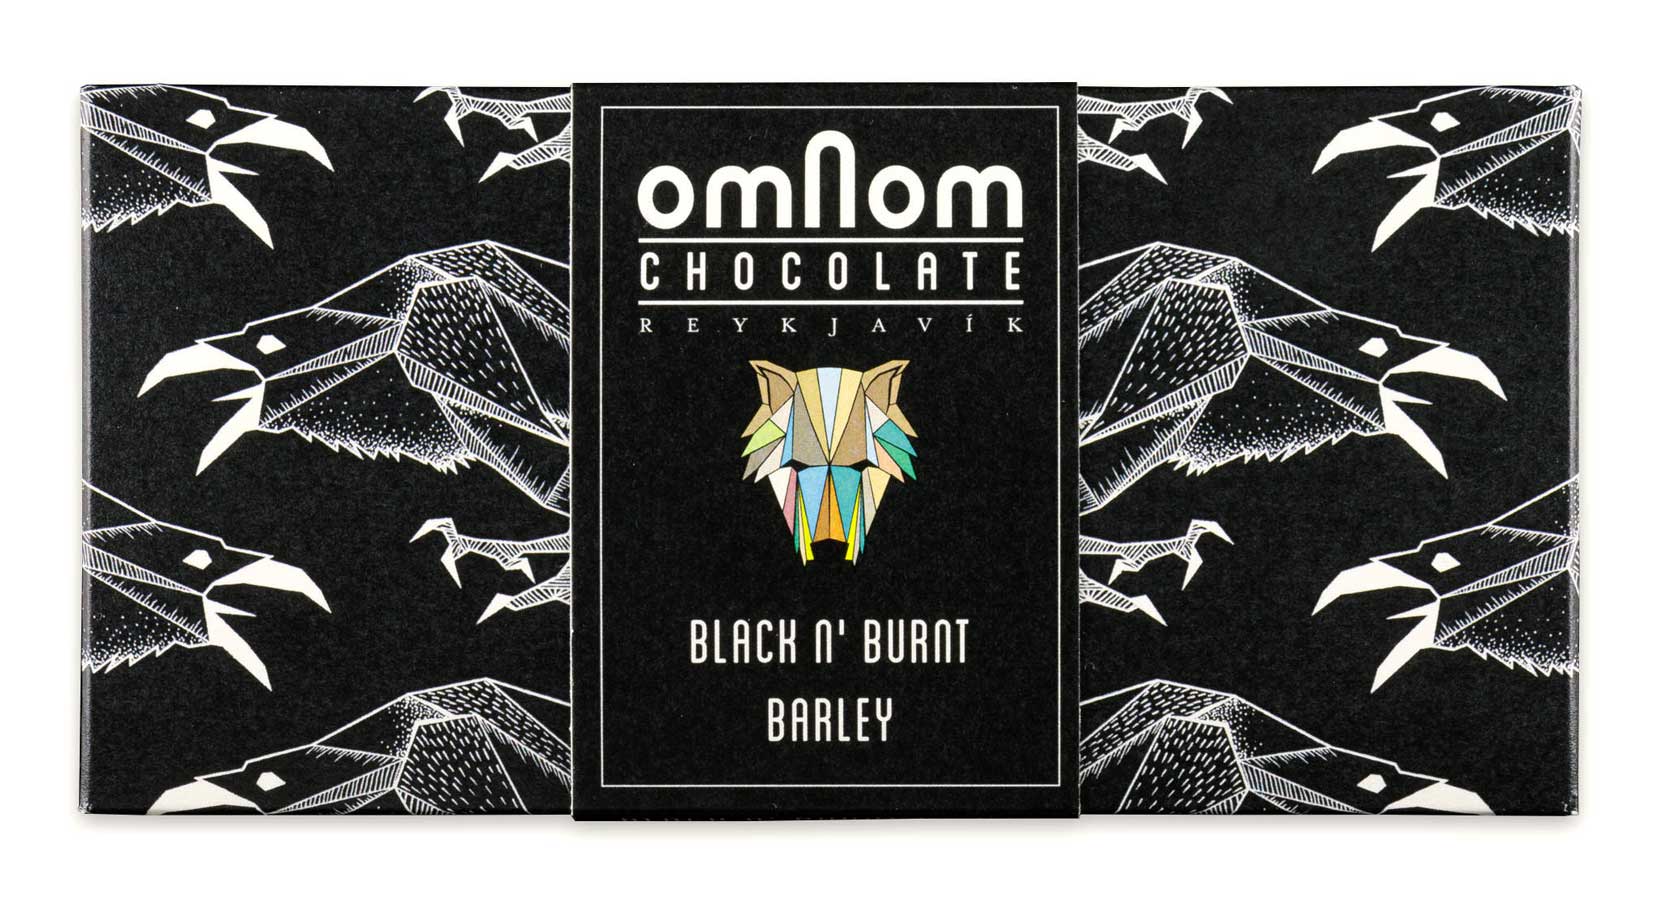 Verpackung der Schwarzgebrannten Gerste Schokolade von Omnom in Schwarz mit Raben-Muster